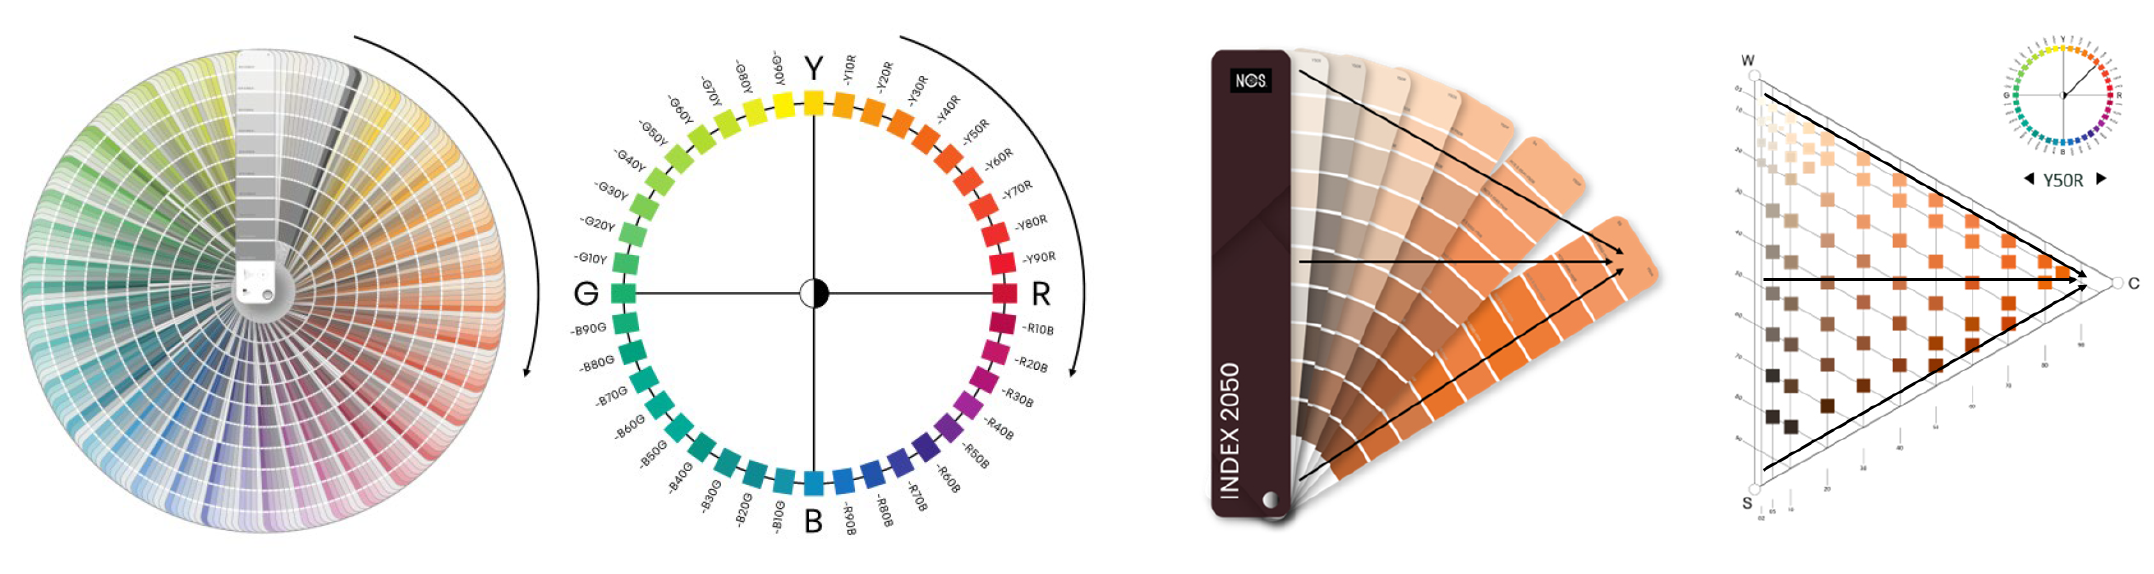 Organizacja kolorów w wzorniku NCS Index 2050